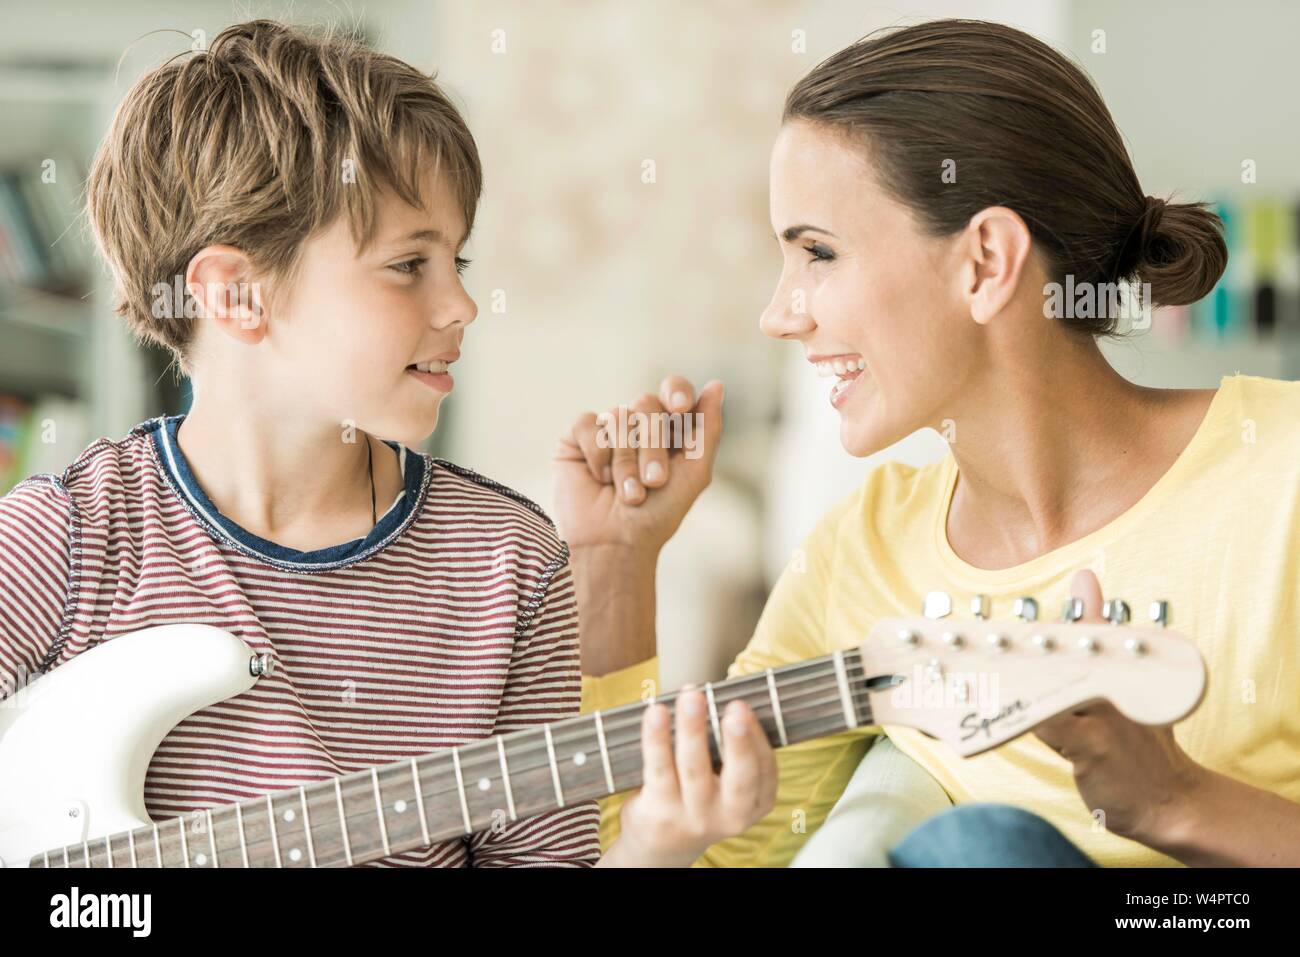 Mutter und Sohn gemeinsam Musik machen, beide singen und Sohn spielen Gitarre, Nahaufnahme, beide sich einander, Deutschland Stockfoto